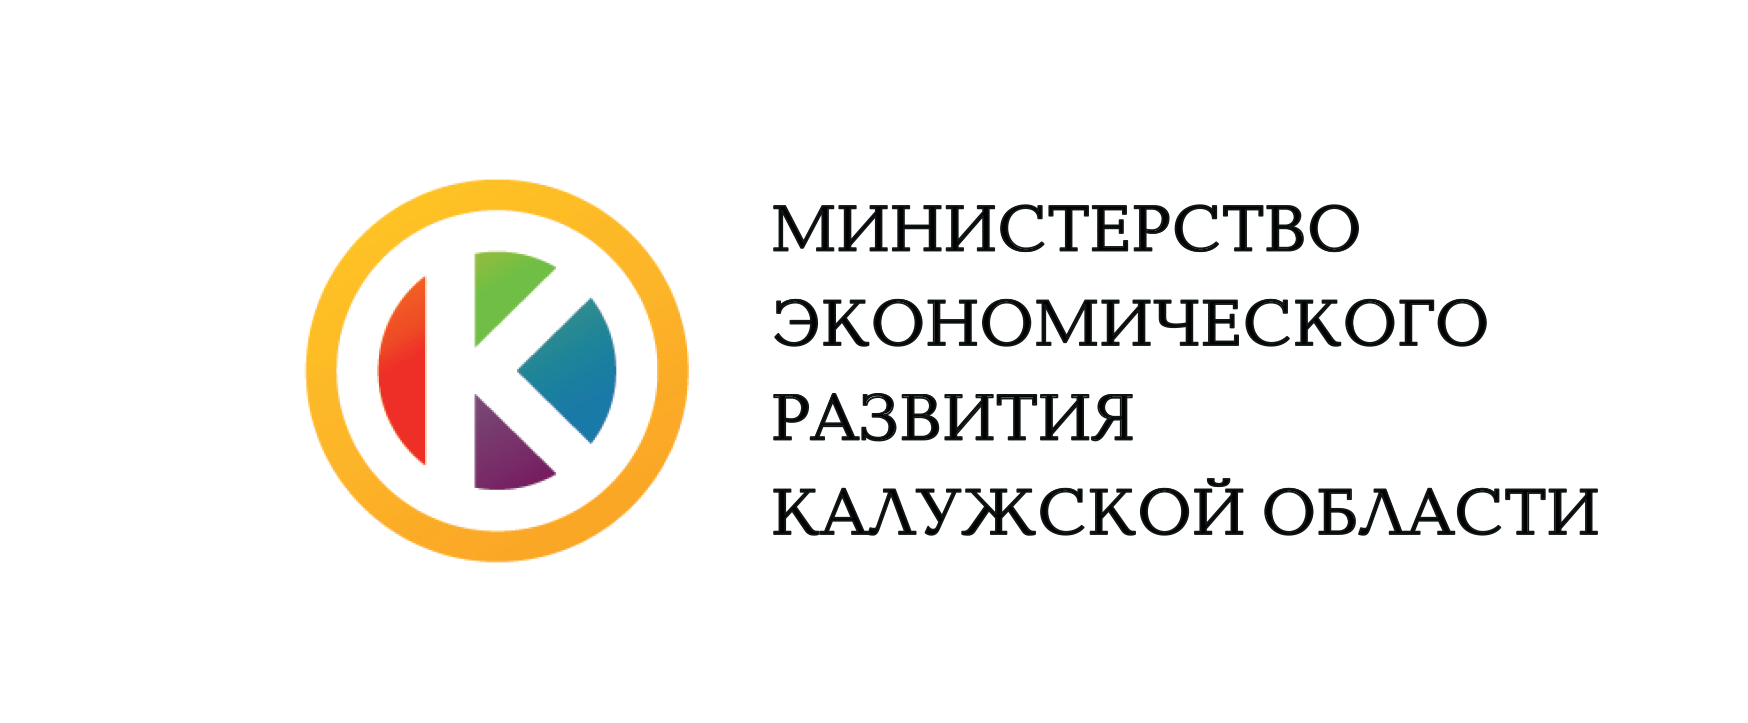 Министерство экономического развития Калужской области